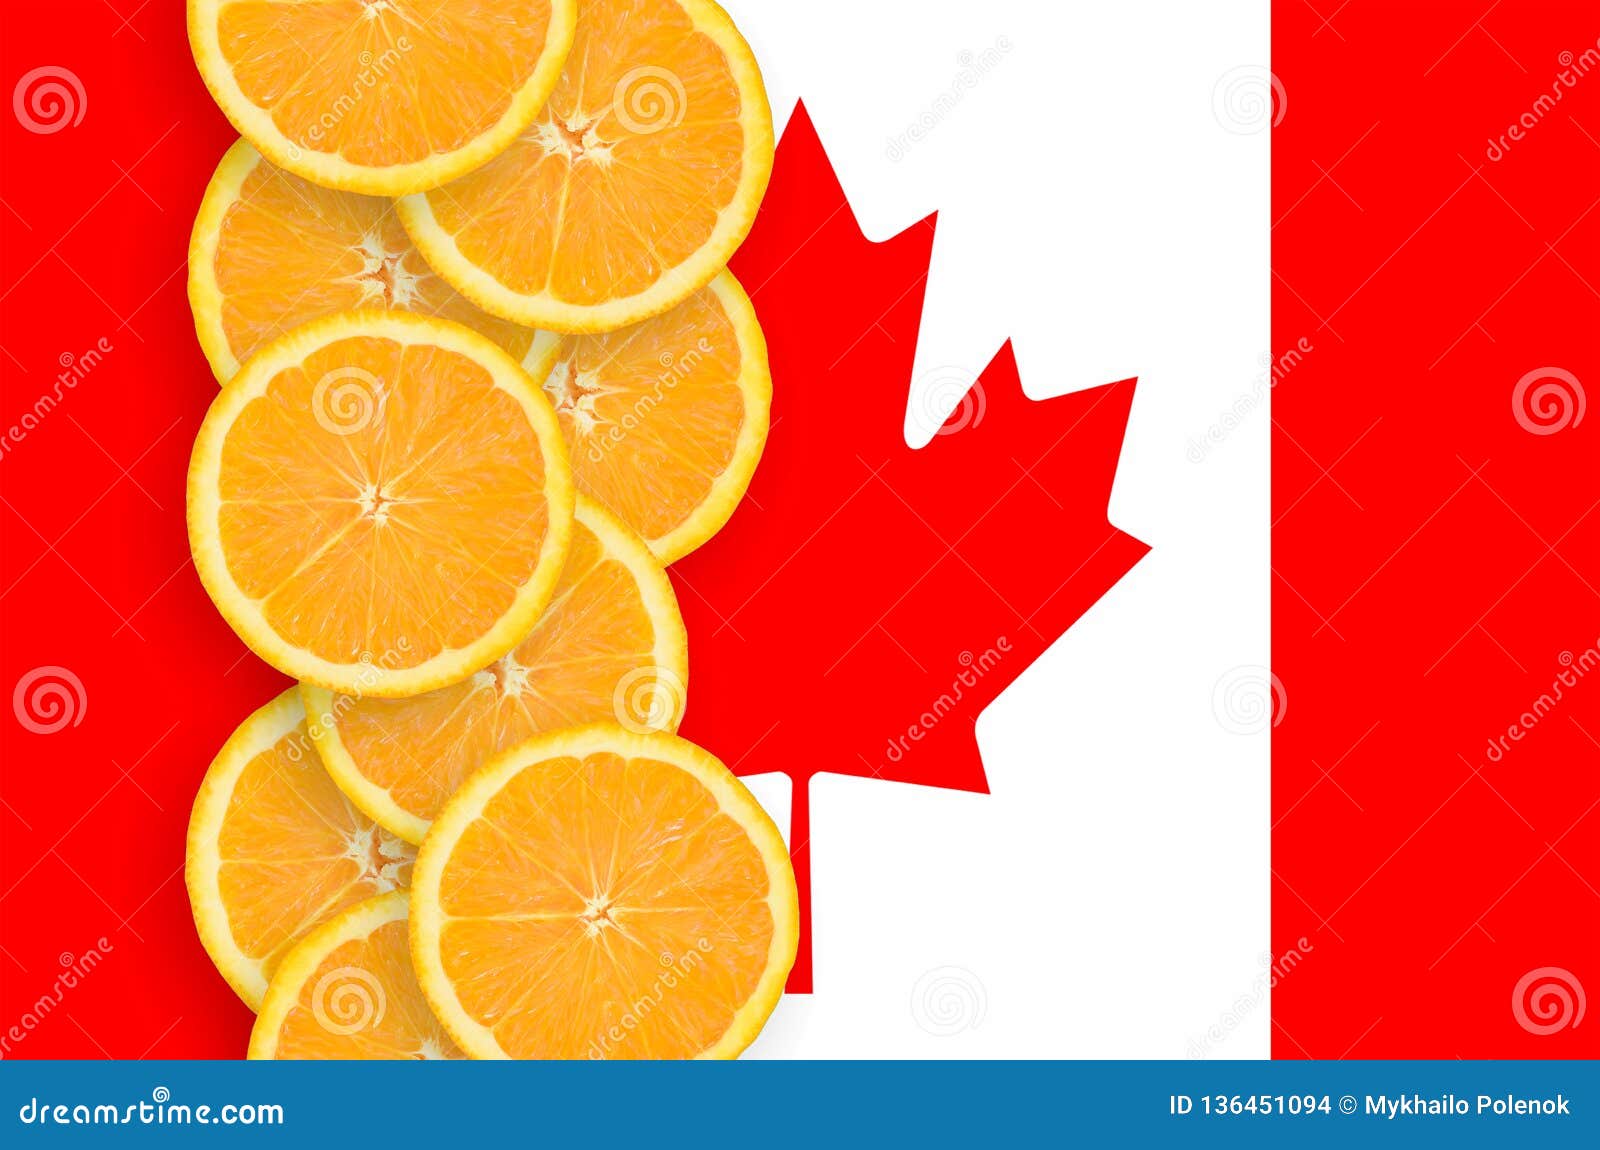 Vertikal rad för Kanada flagga- och citrusfruktskivor. Kanada flagga och vertikal rad av orange citrusfruktskivor Begrepp av att växa såväl som import och export av citrusfrukter